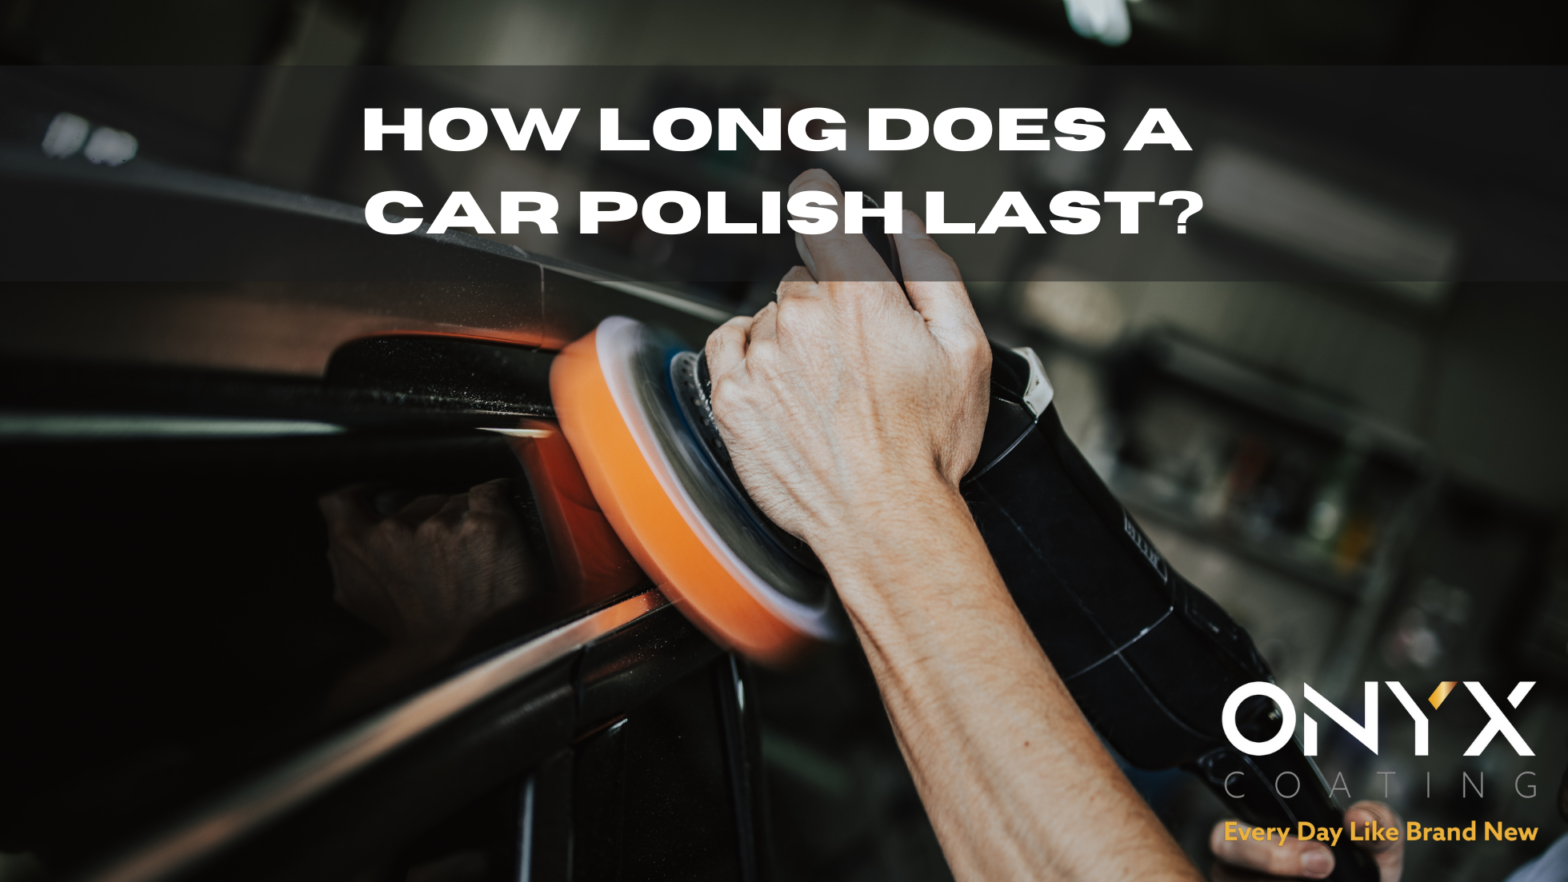 How long does a car polish last